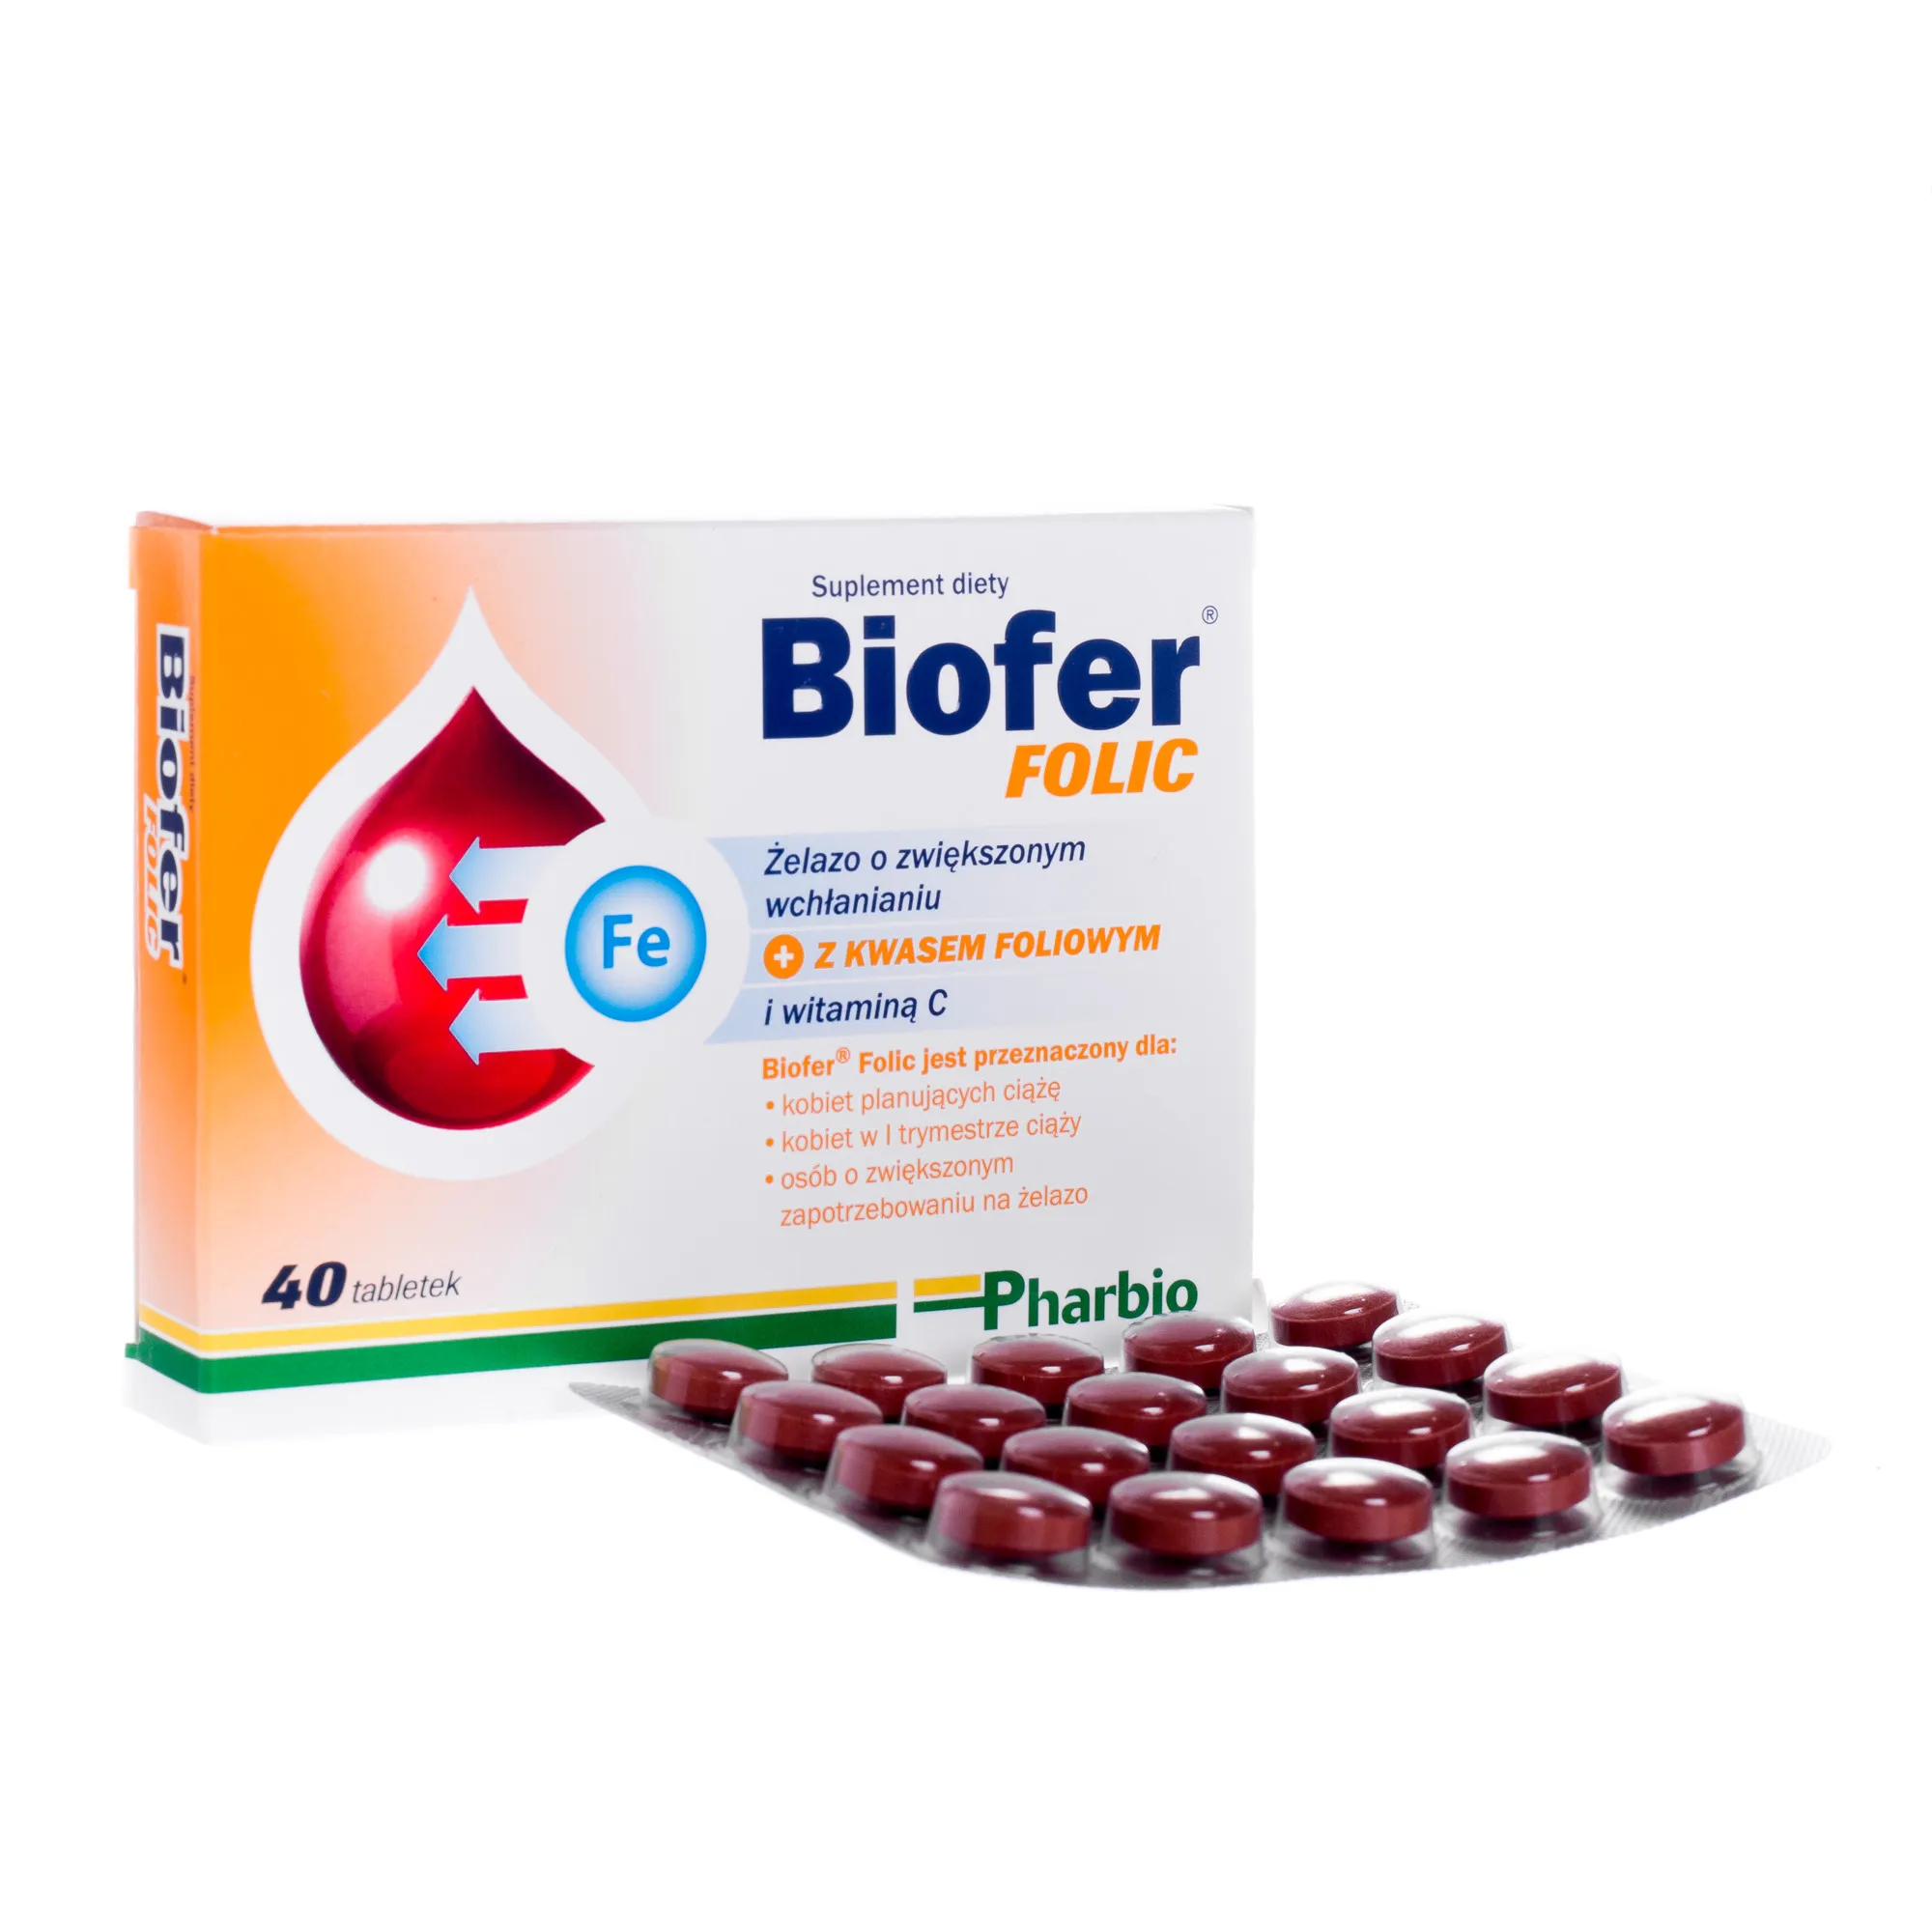 Biofer folic, suplement diety, 40 tabletek 